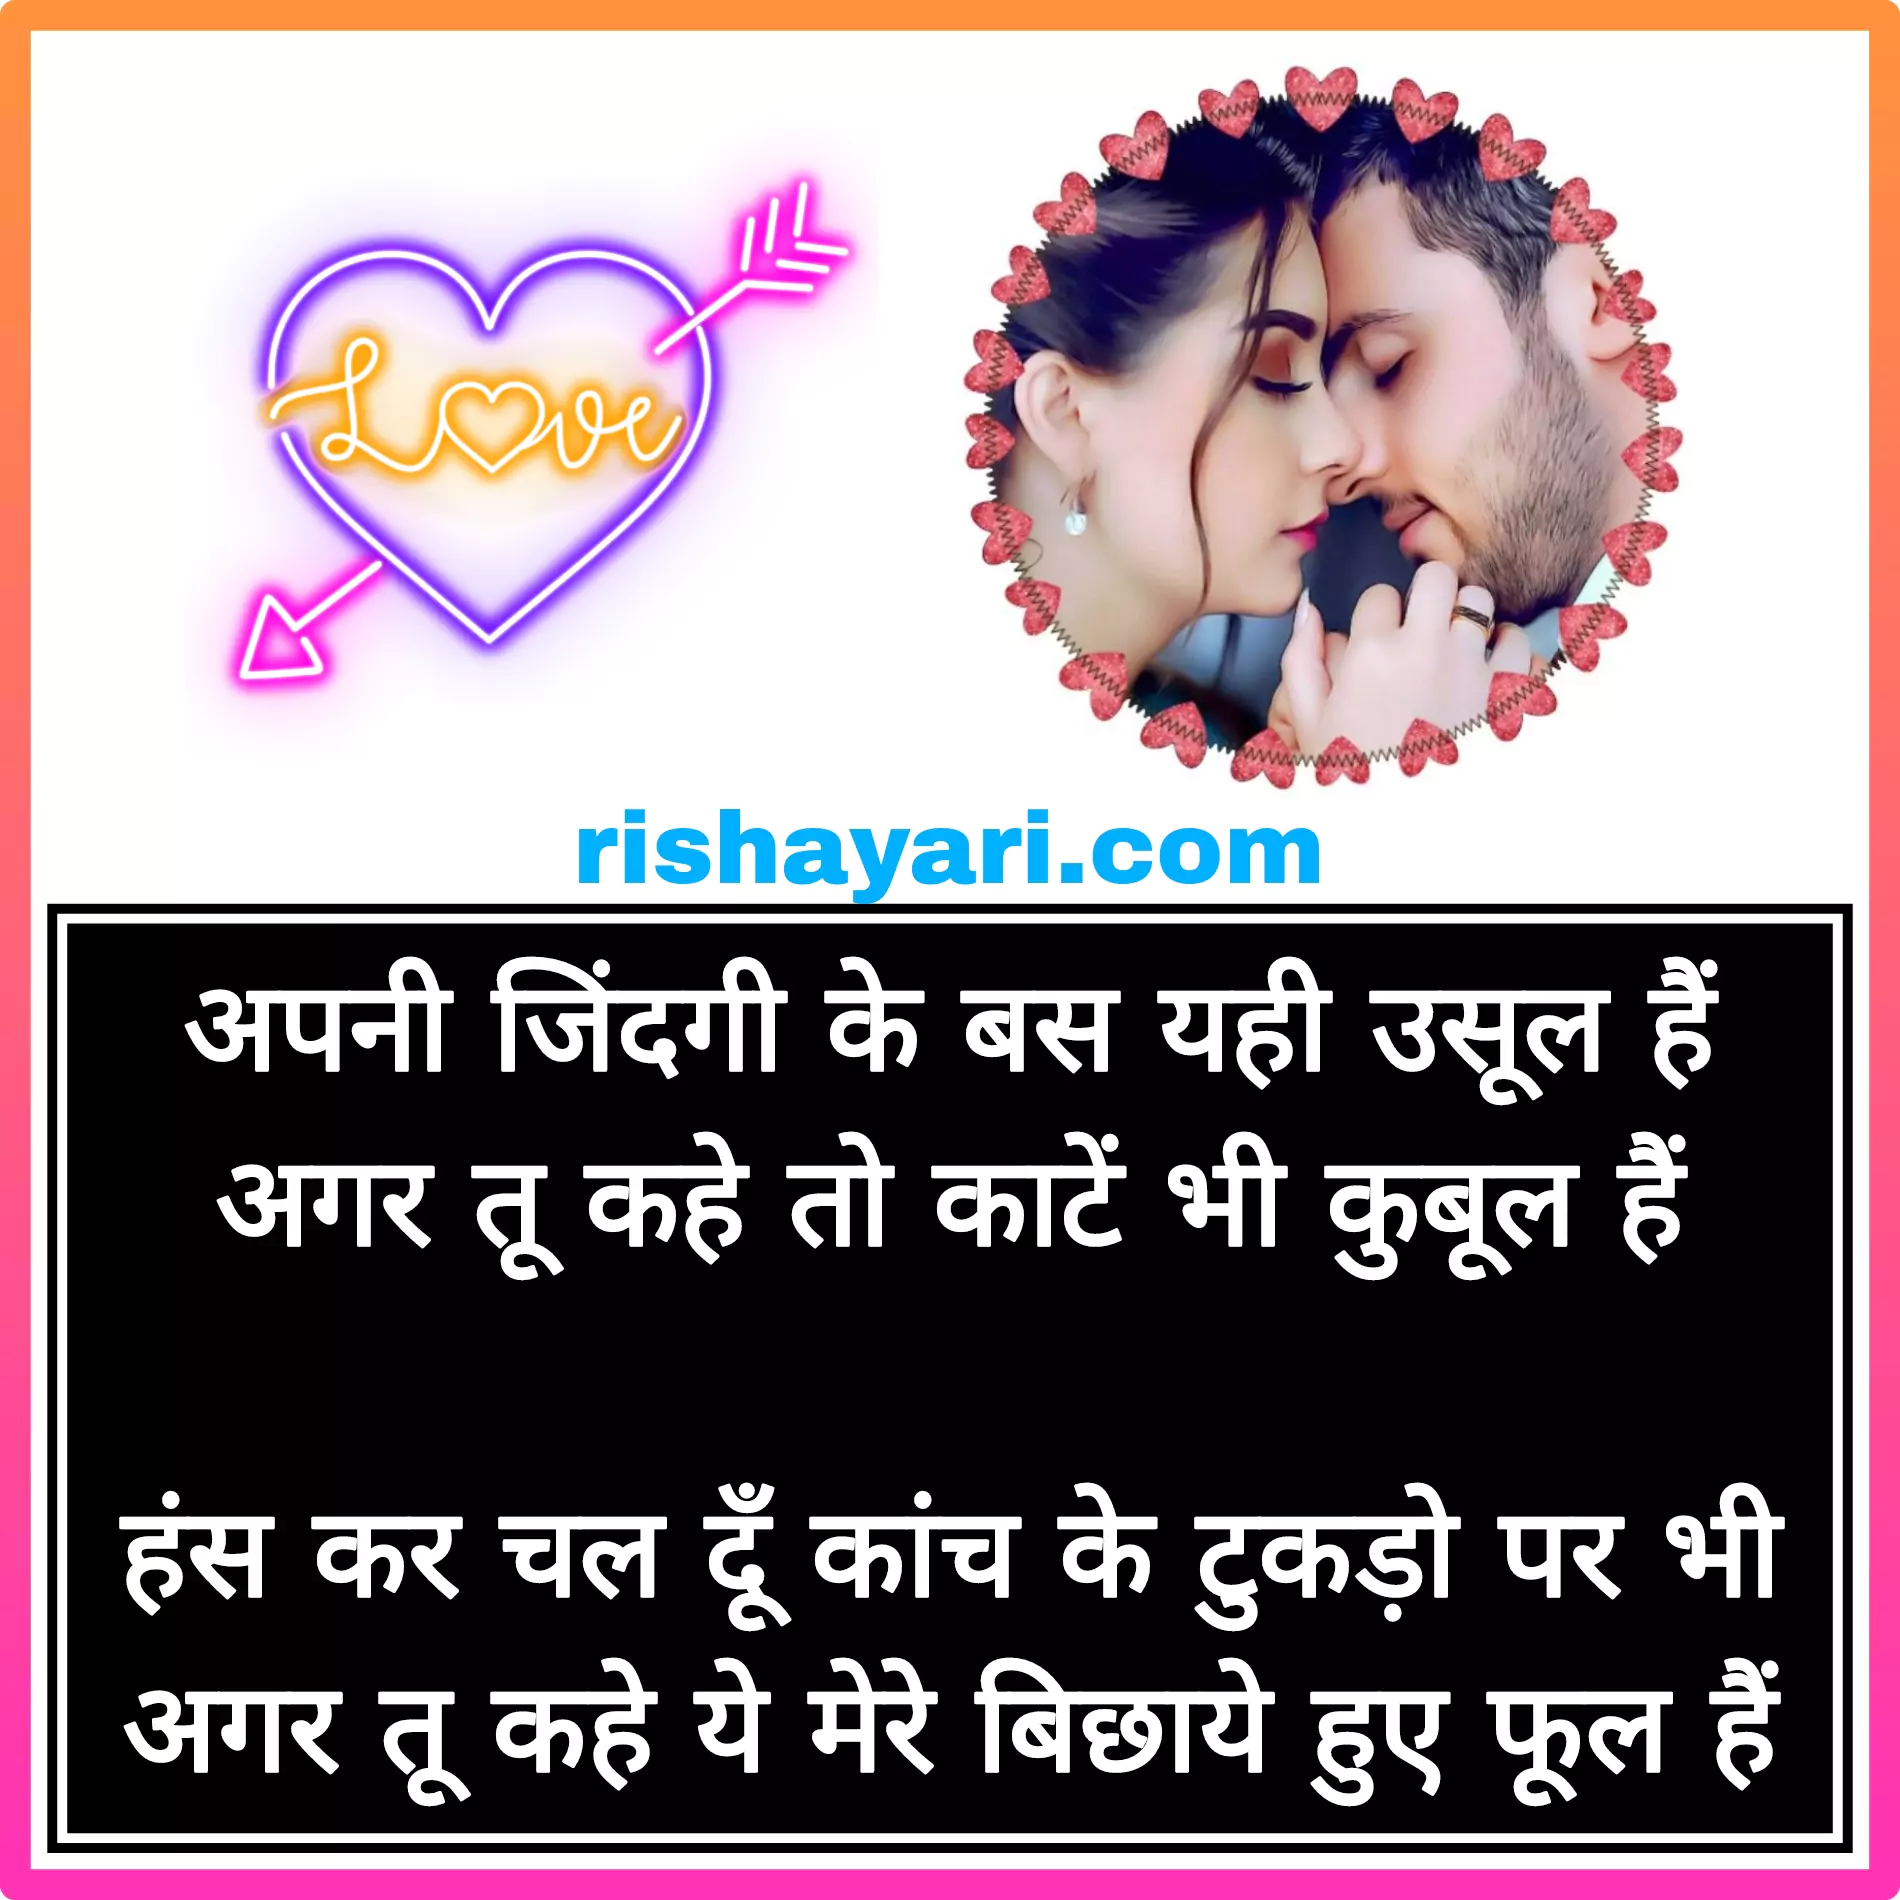 love-shayari-in-hindi-images